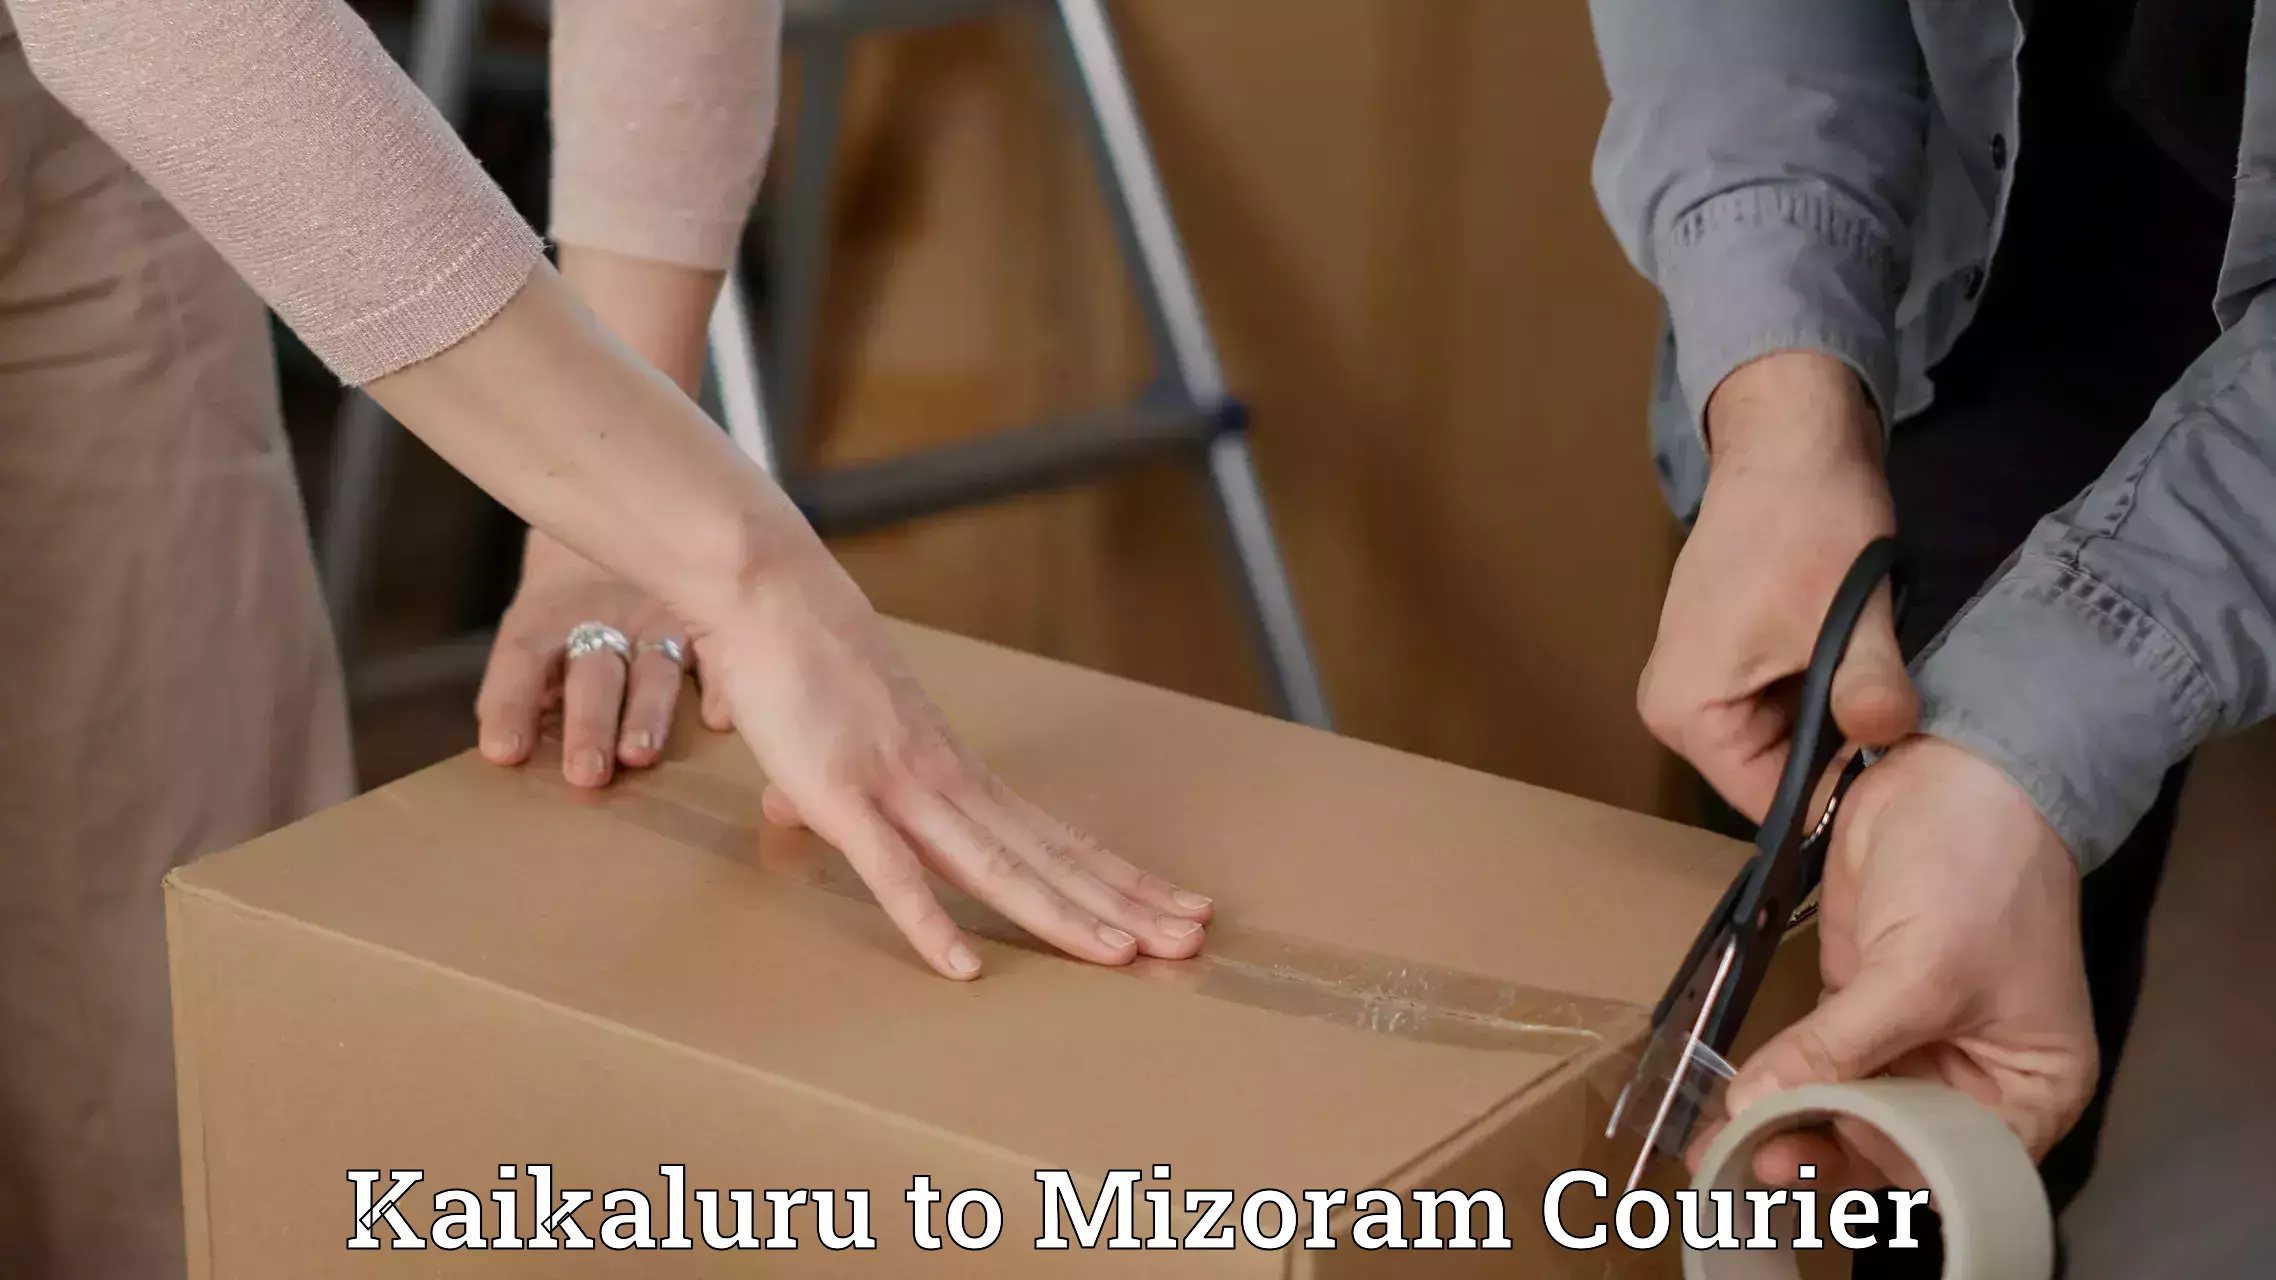 Efficient parcel service Kaikaluru to Mizoram